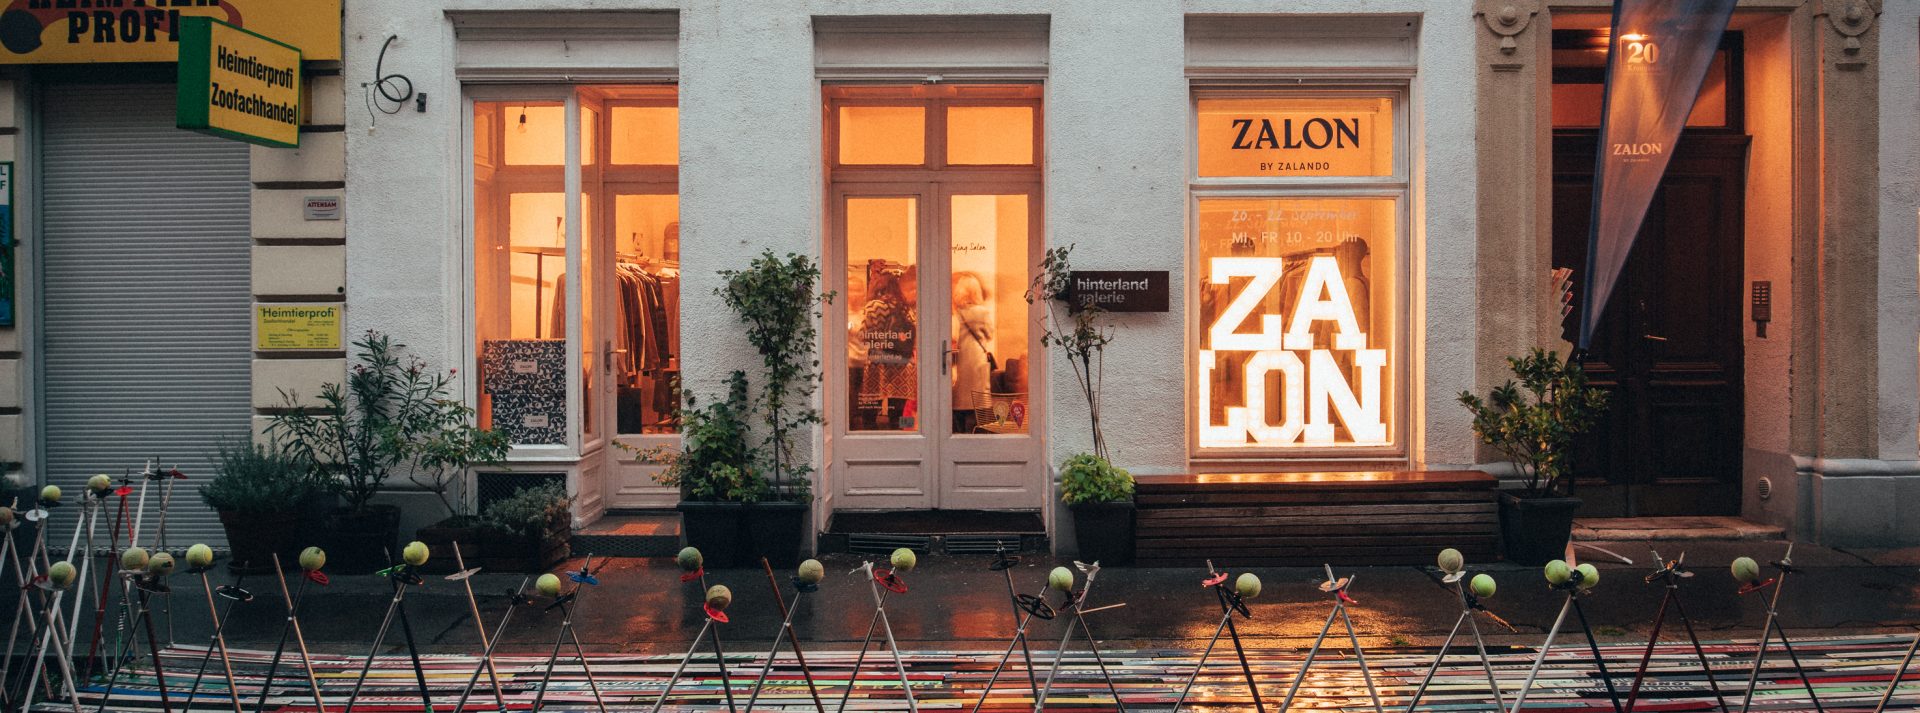 Zalon by Zalando @ Wien © offenblende.de